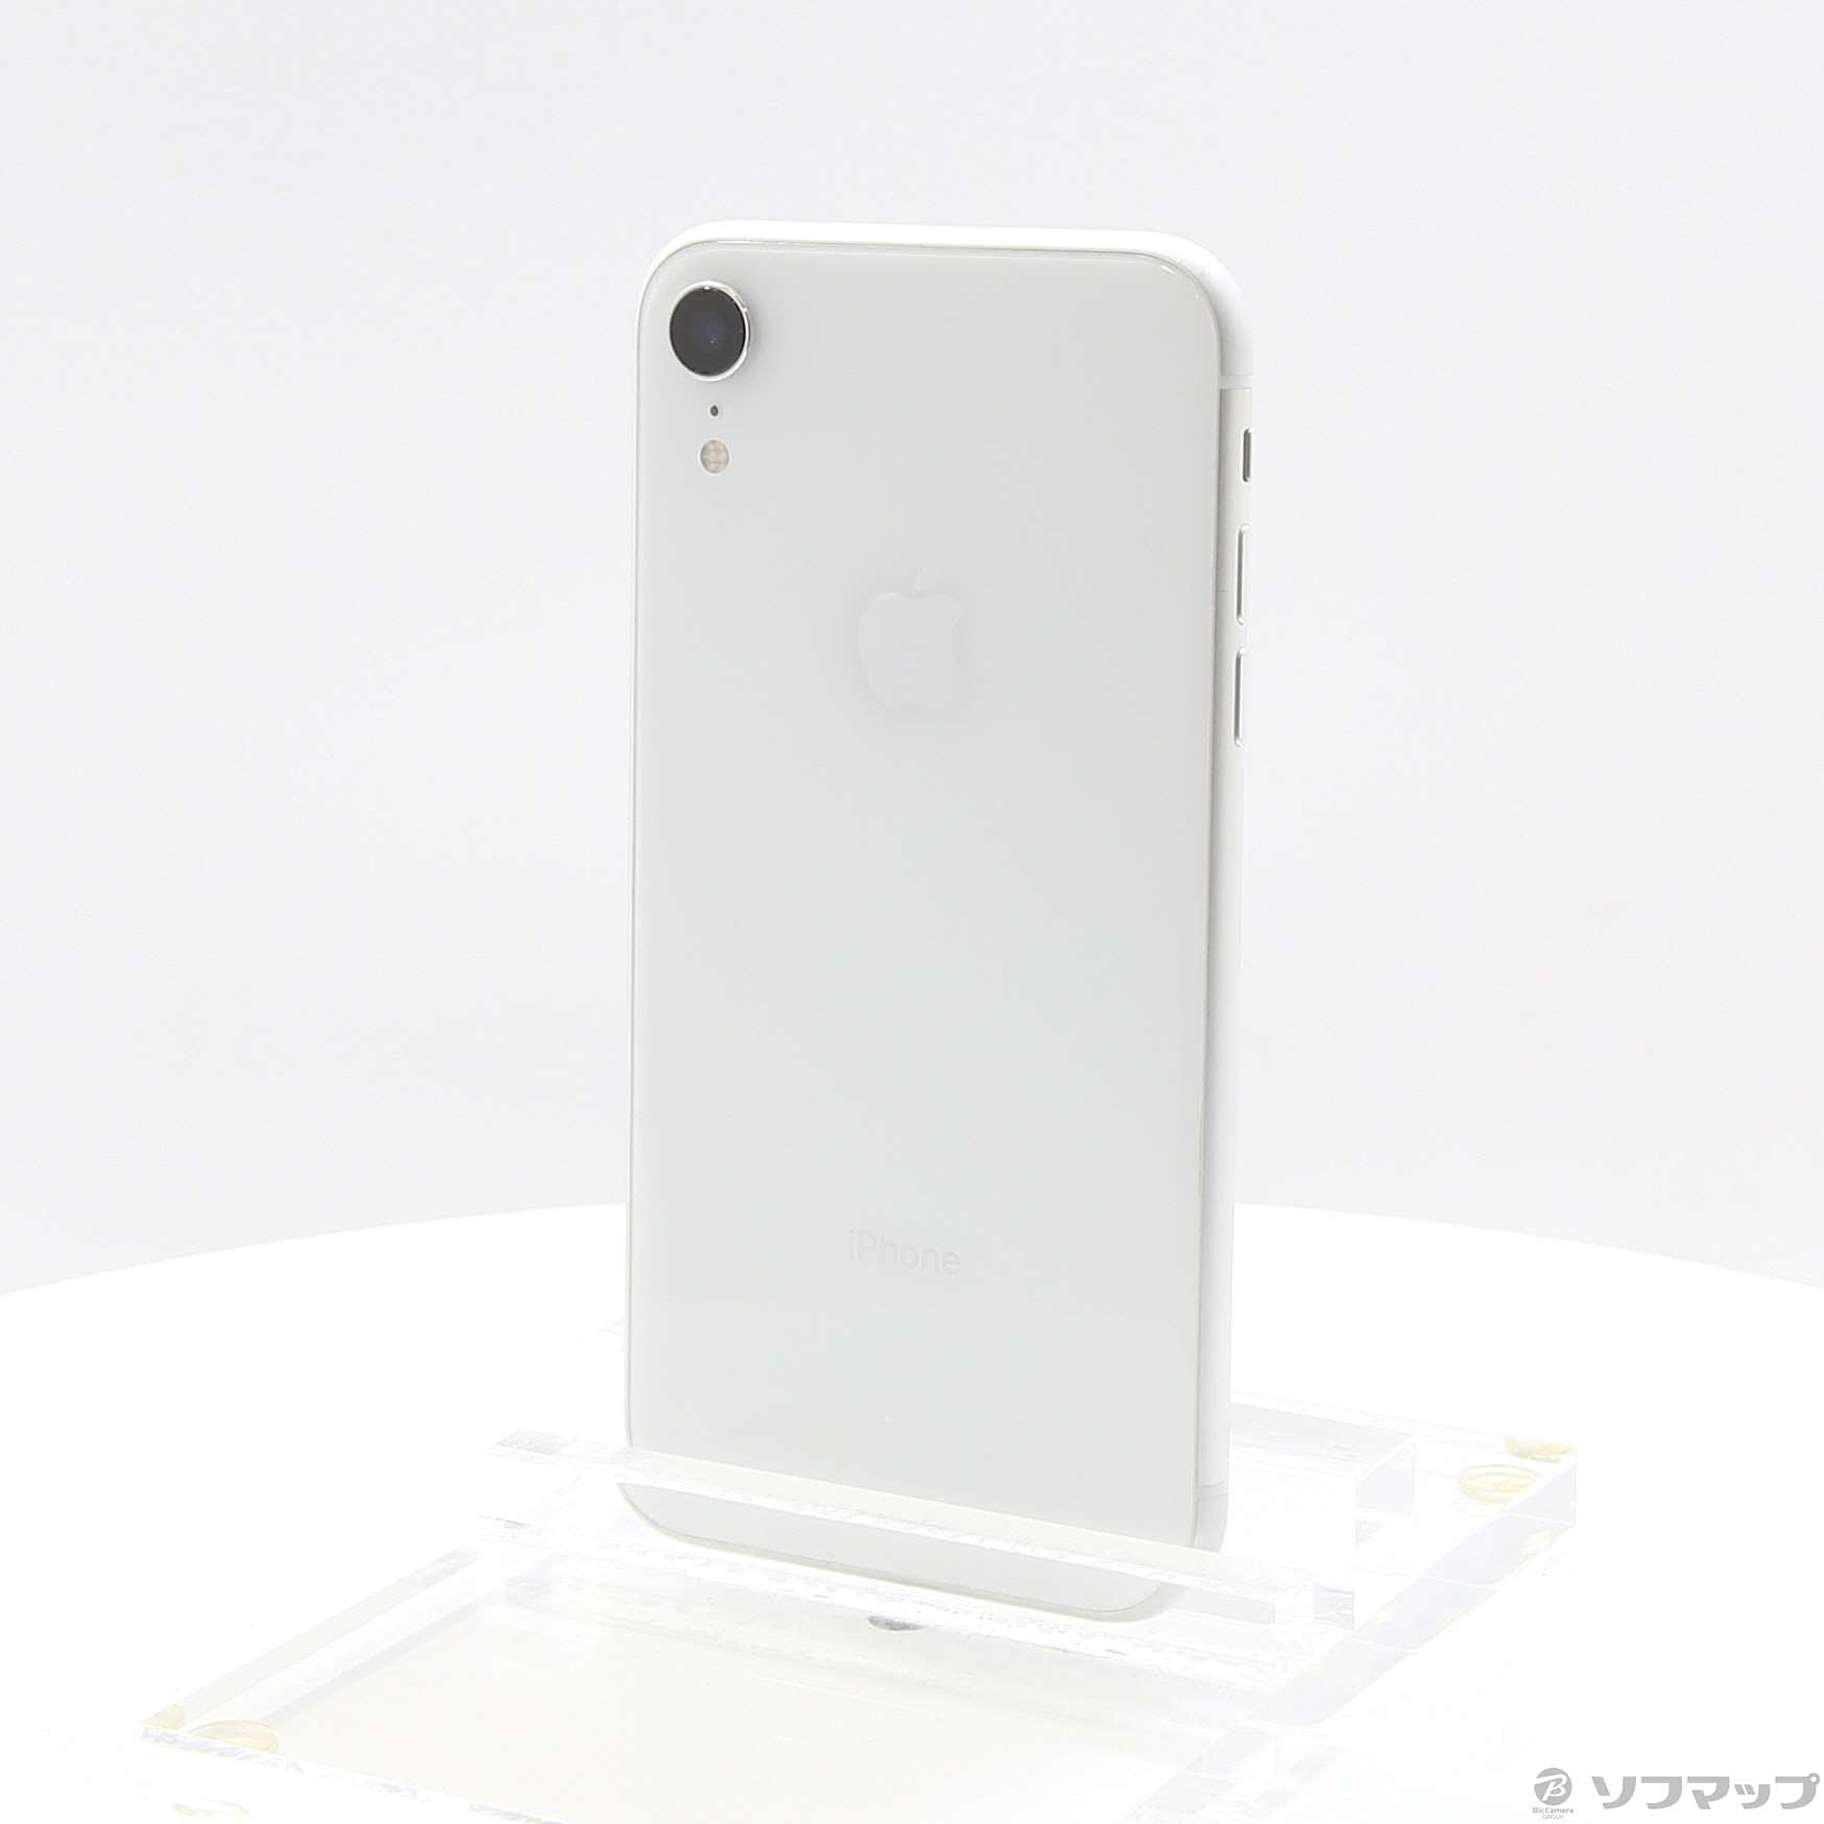 8,820円iPhoneXR 64GB ホワイト